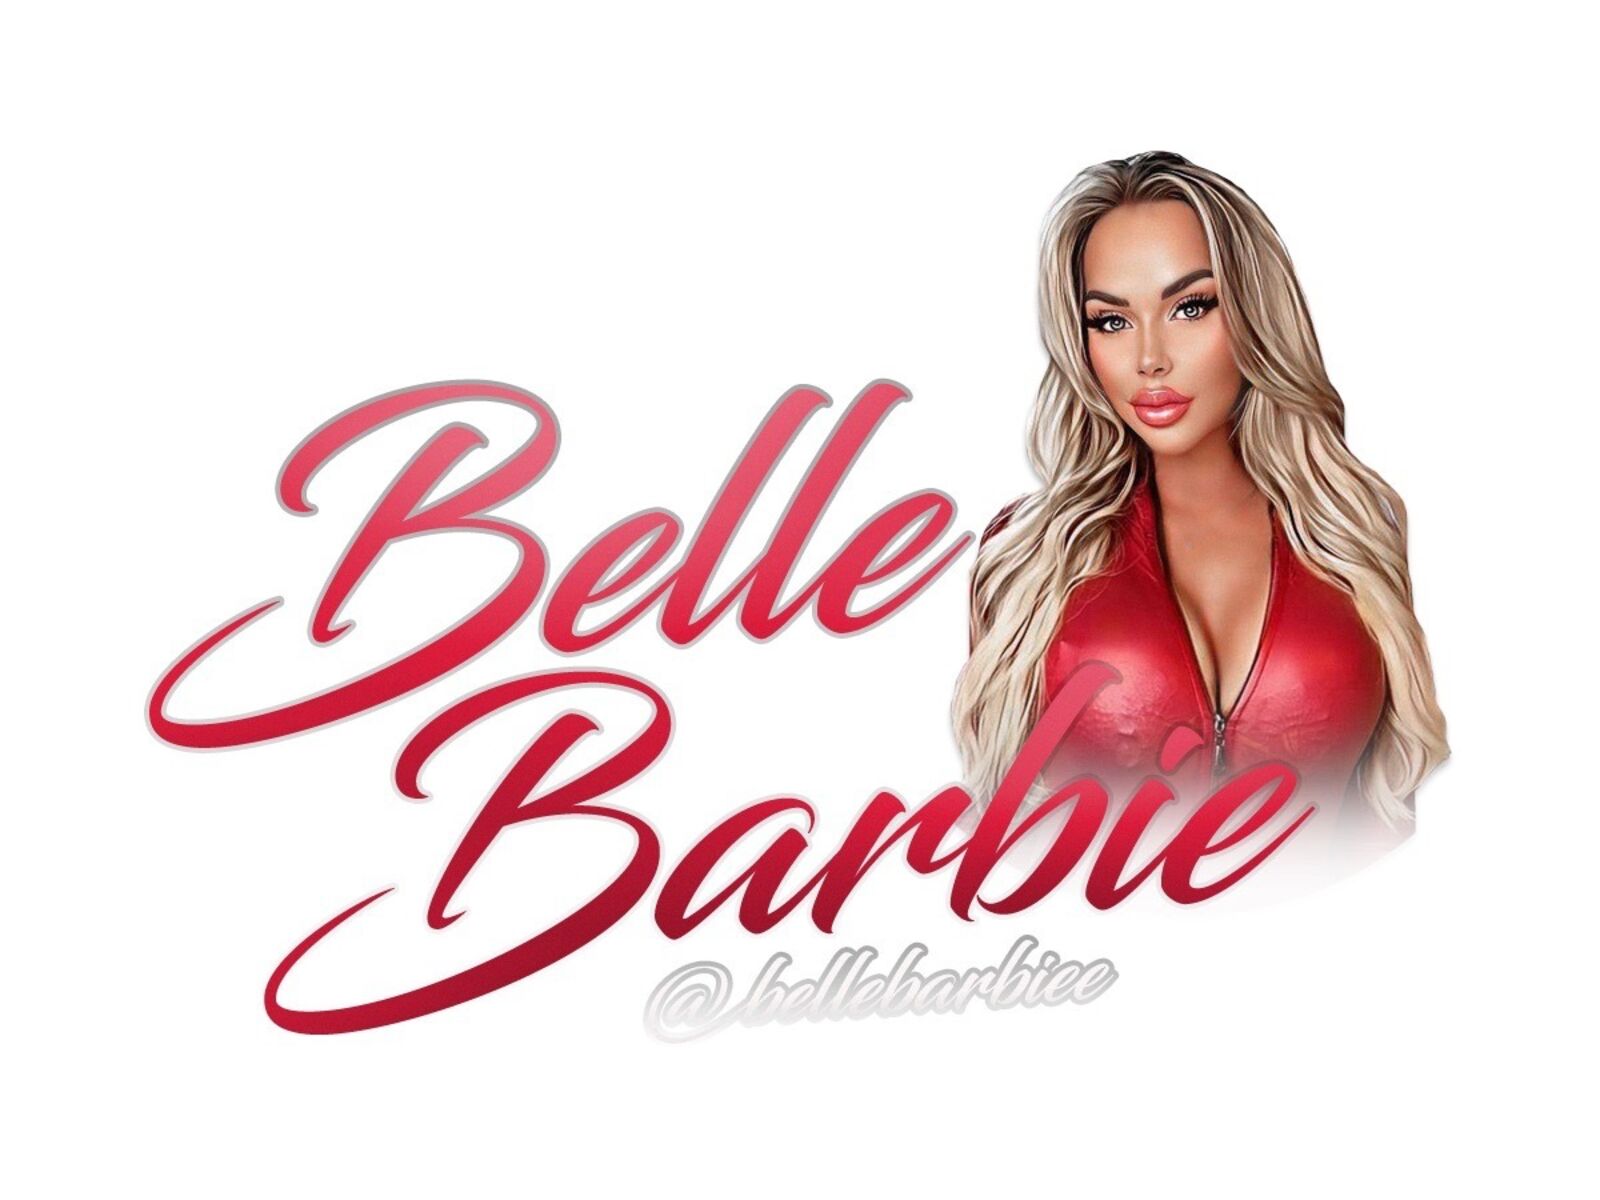 See BelleBarbie exclusive 🌸 profile